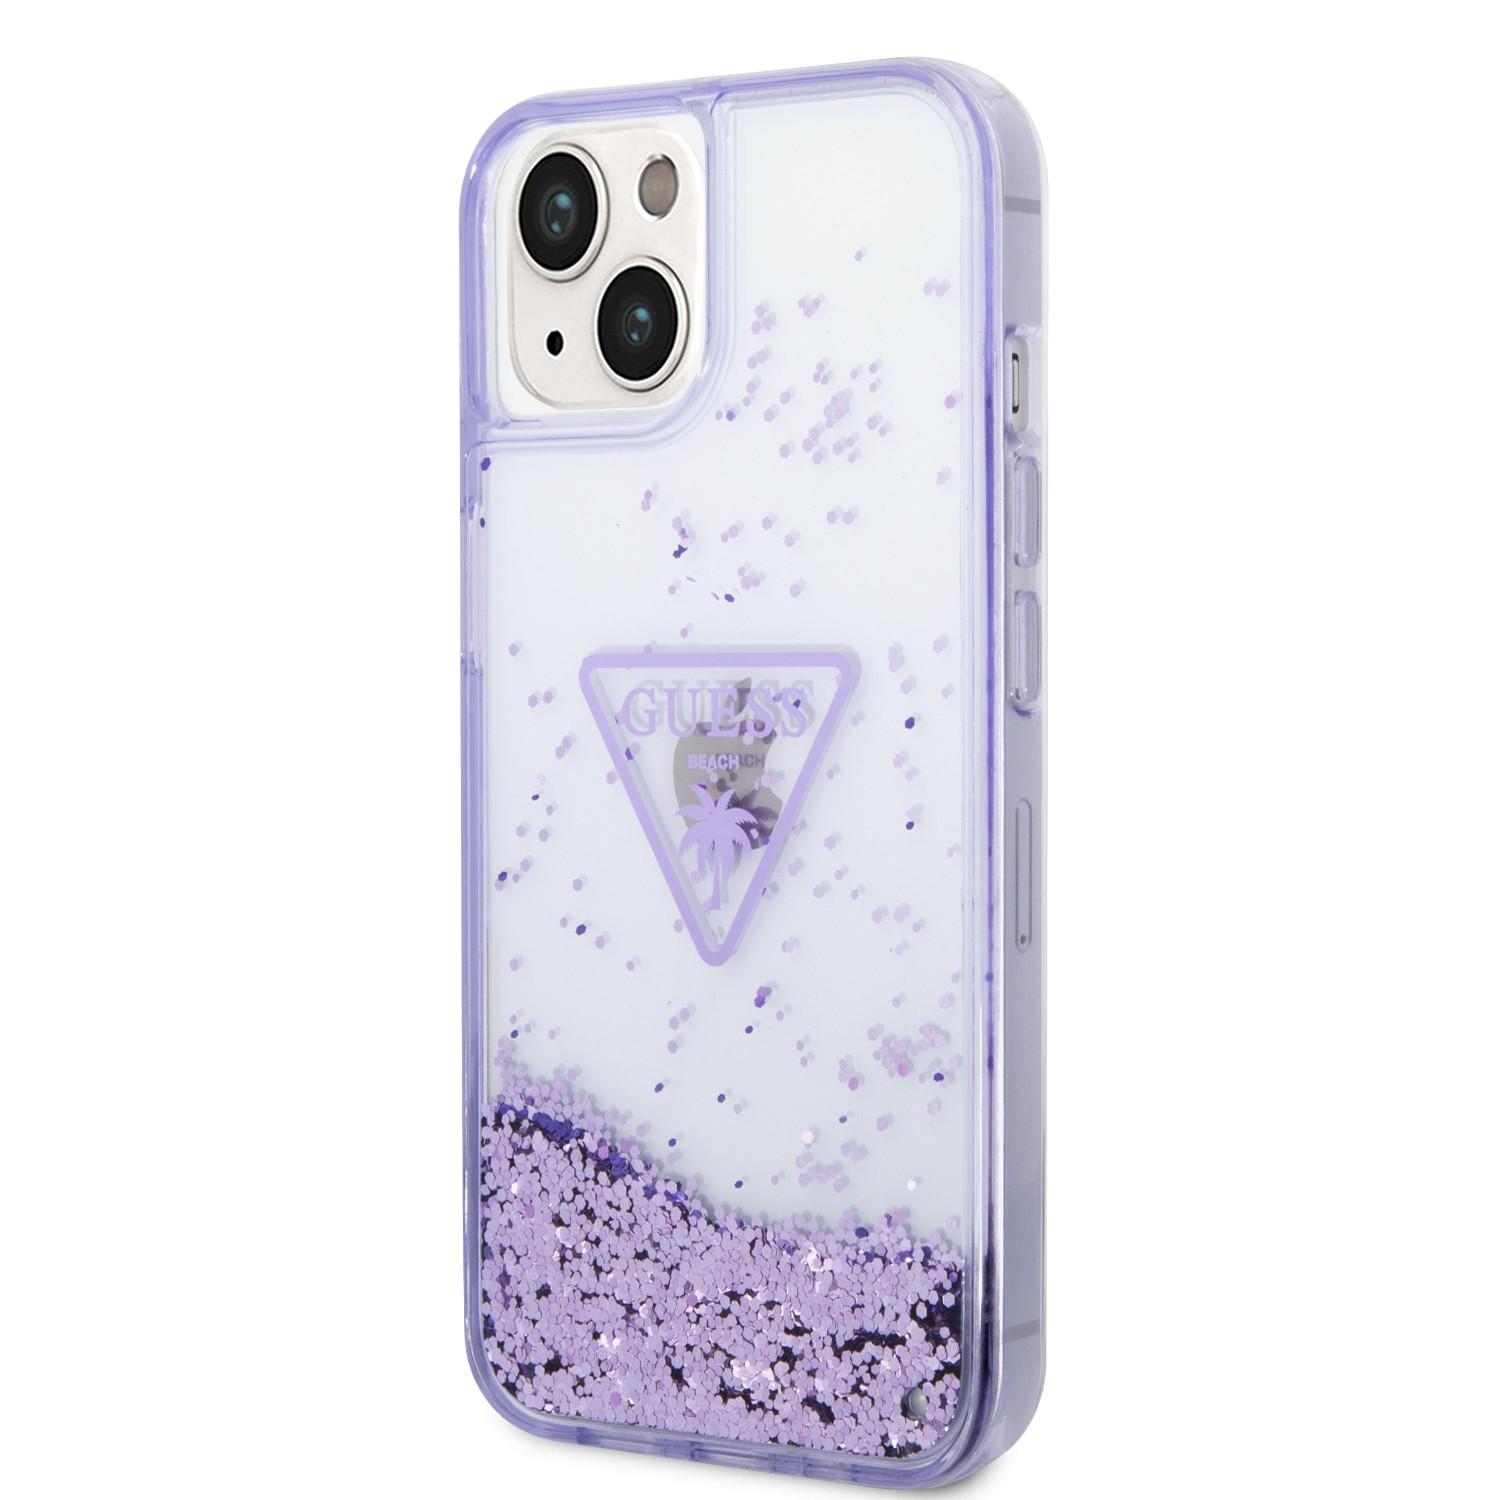 كفر ايفون 14 نهدي جيس Guess Liquid Glitter Triangle Hard Case for iPhone 14 Translucent Purple - cG9zdDoxMzg0MDc3